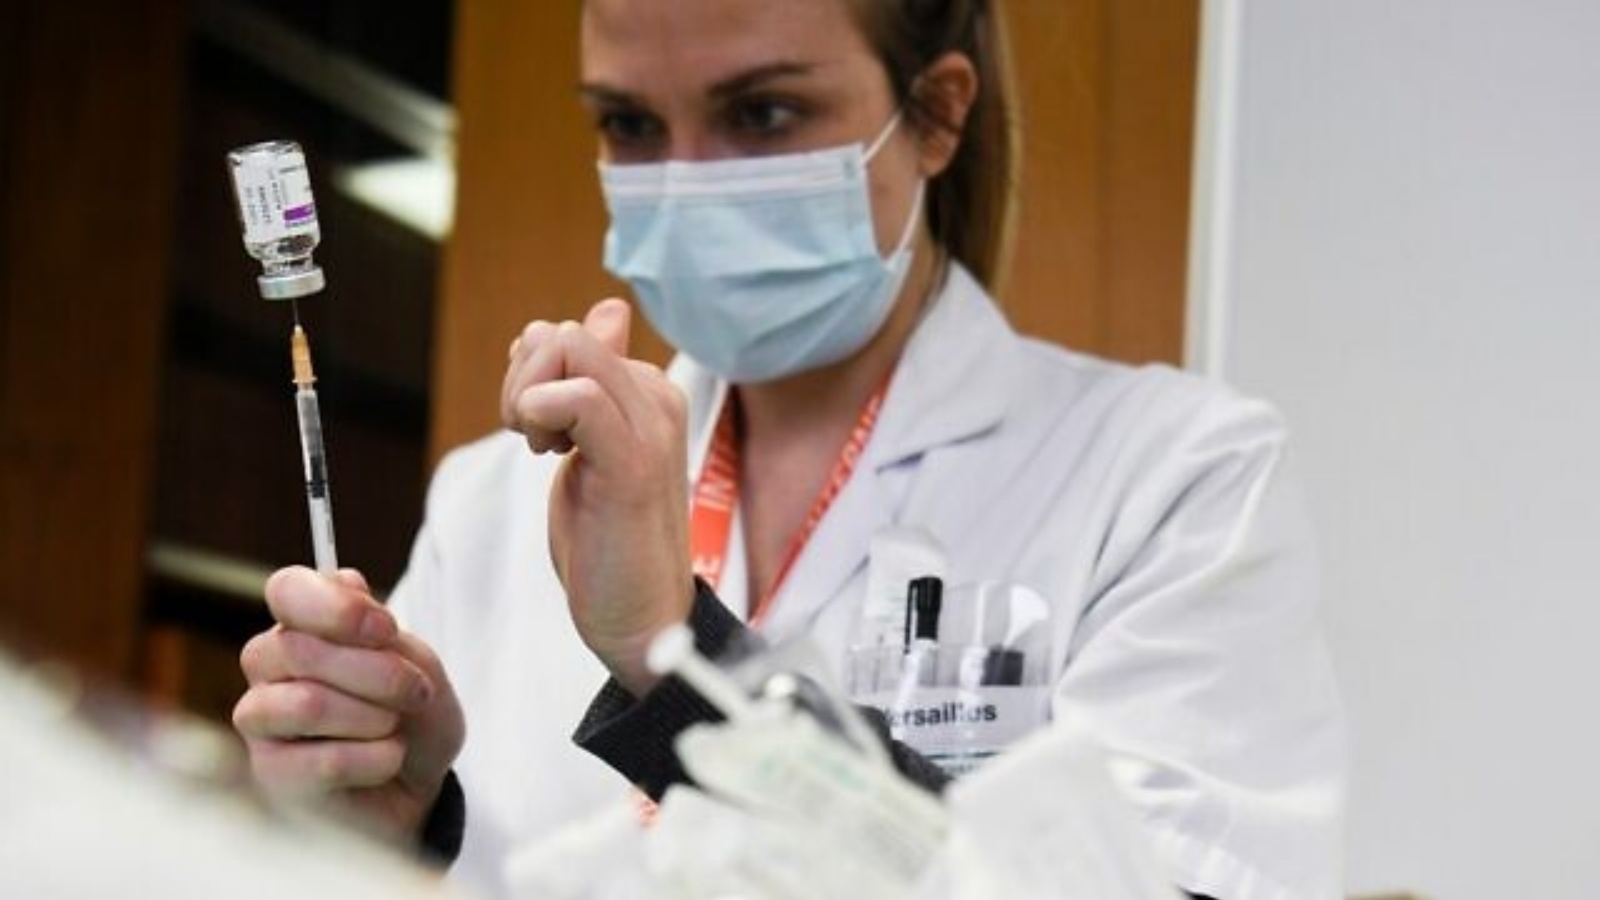 عاملة صحة تقوم بتجهيز جرعة من لقاح كوفيد-19 أسترازينيكا، في مستشفى Mignot في Le Chesnay، بالقرب من باريس، في 7 فبراير 2021